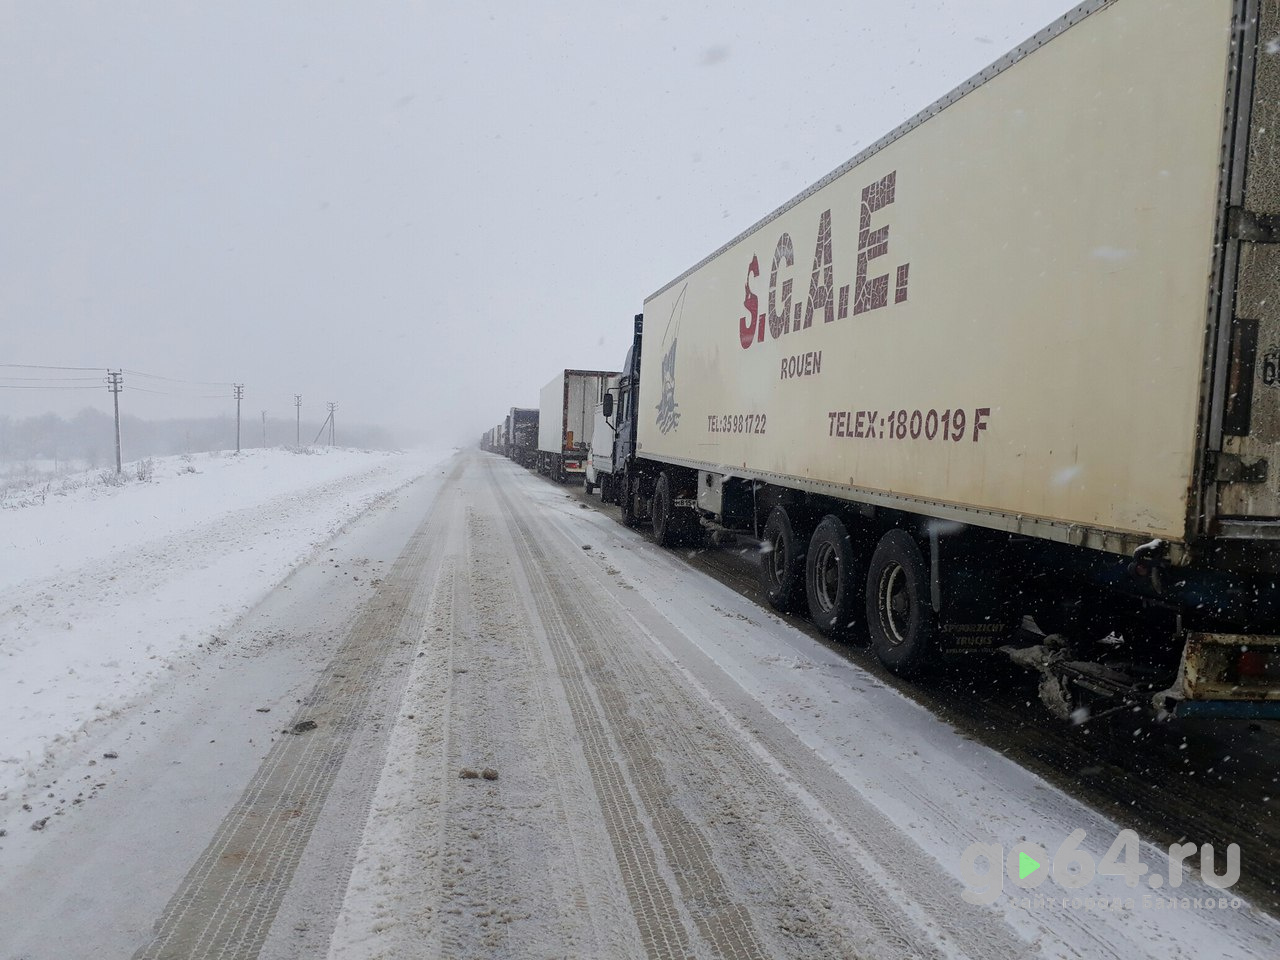 Вчера снег парализовал движение в городе и на трассах около Балаково